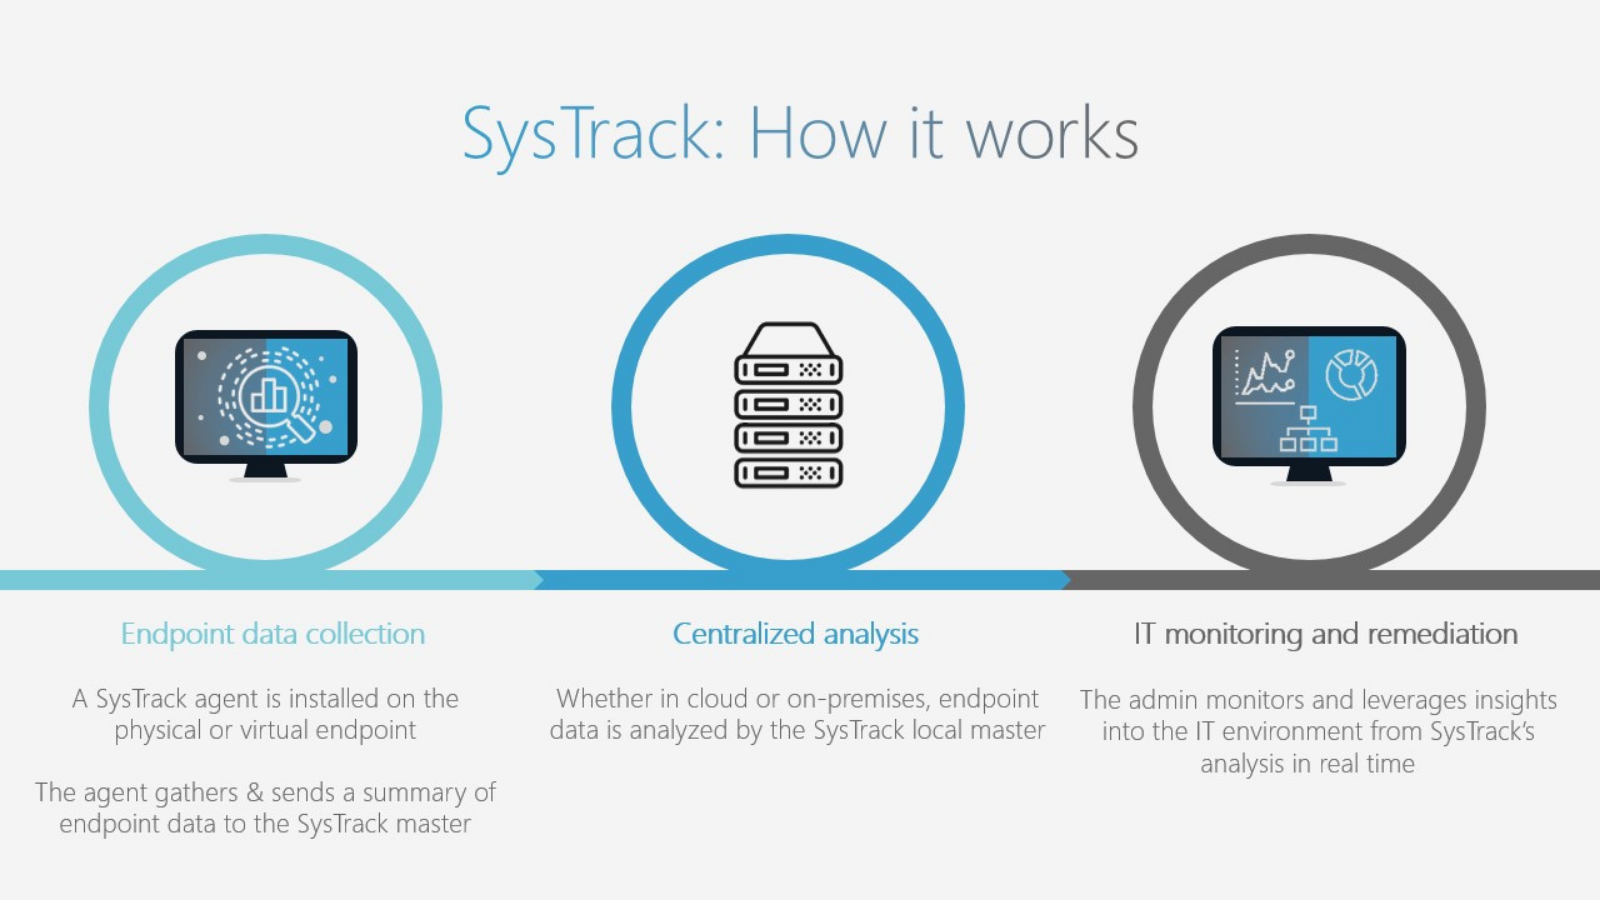 Webinar slide showing how SysTrack works.